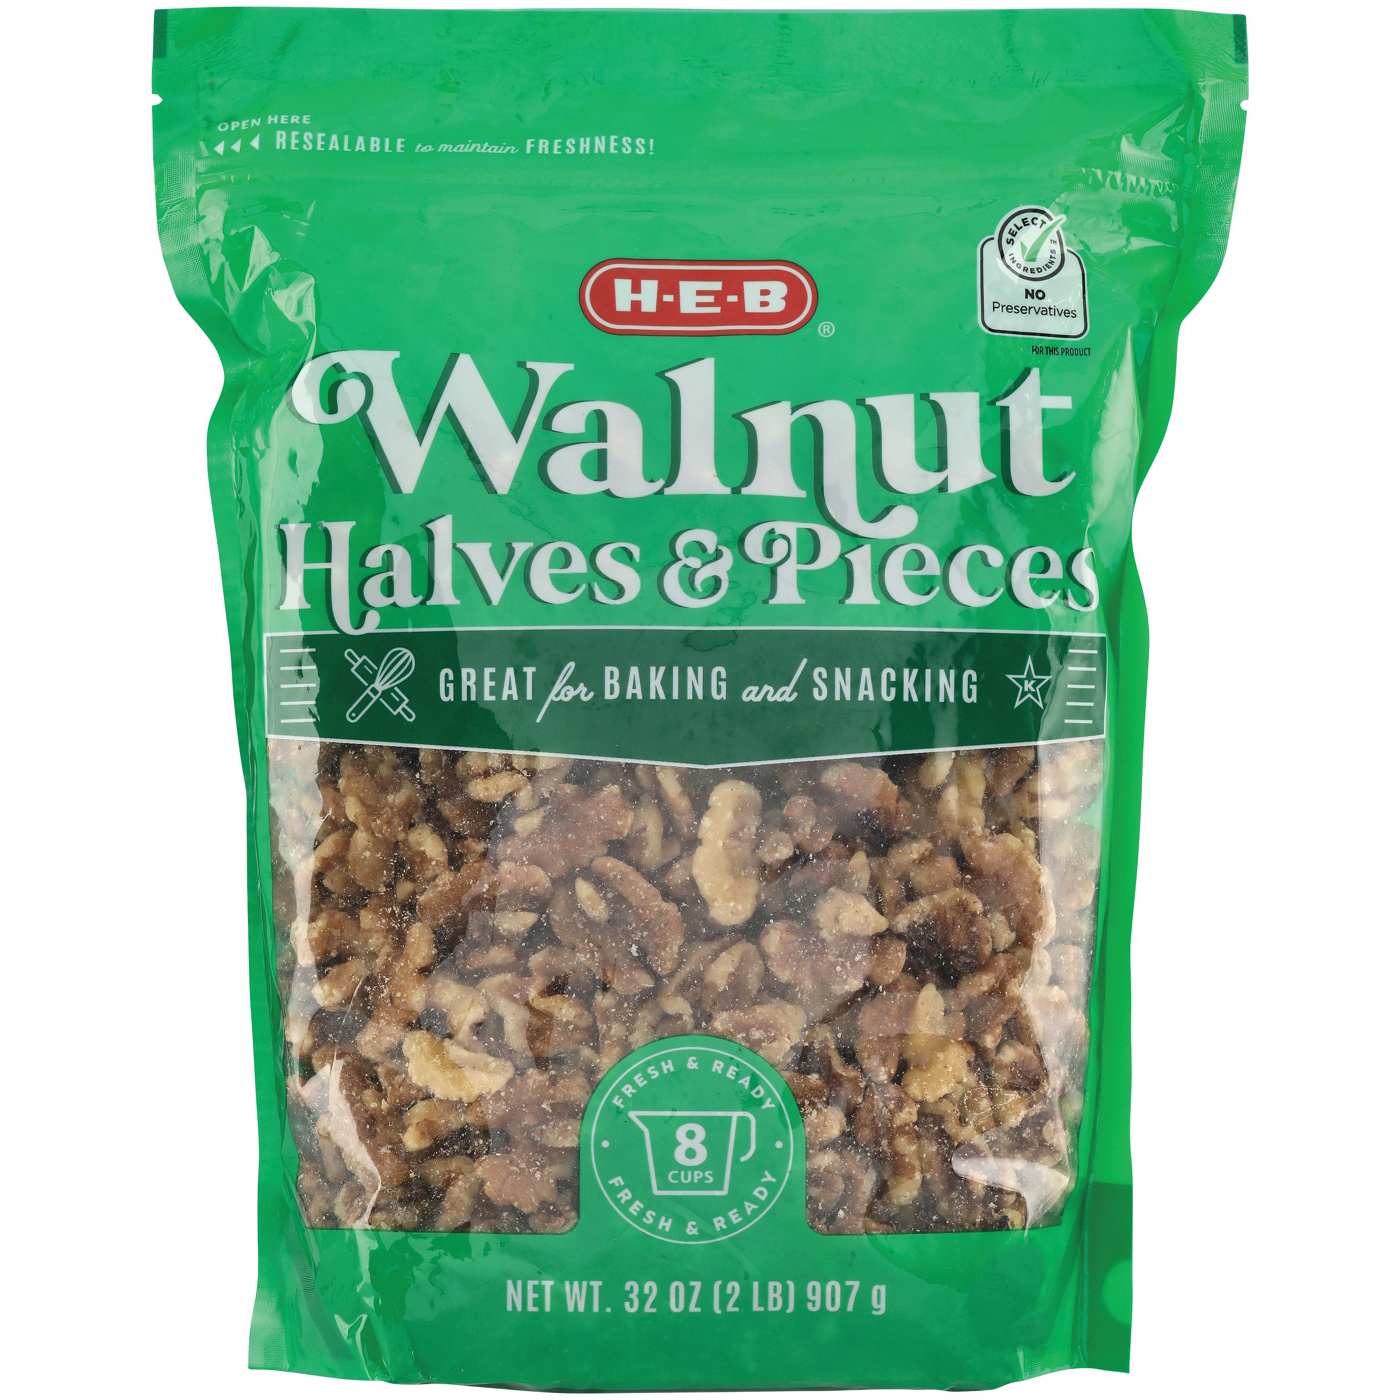 H-E-B Walnut Halves & Pieces; image 1 of 2